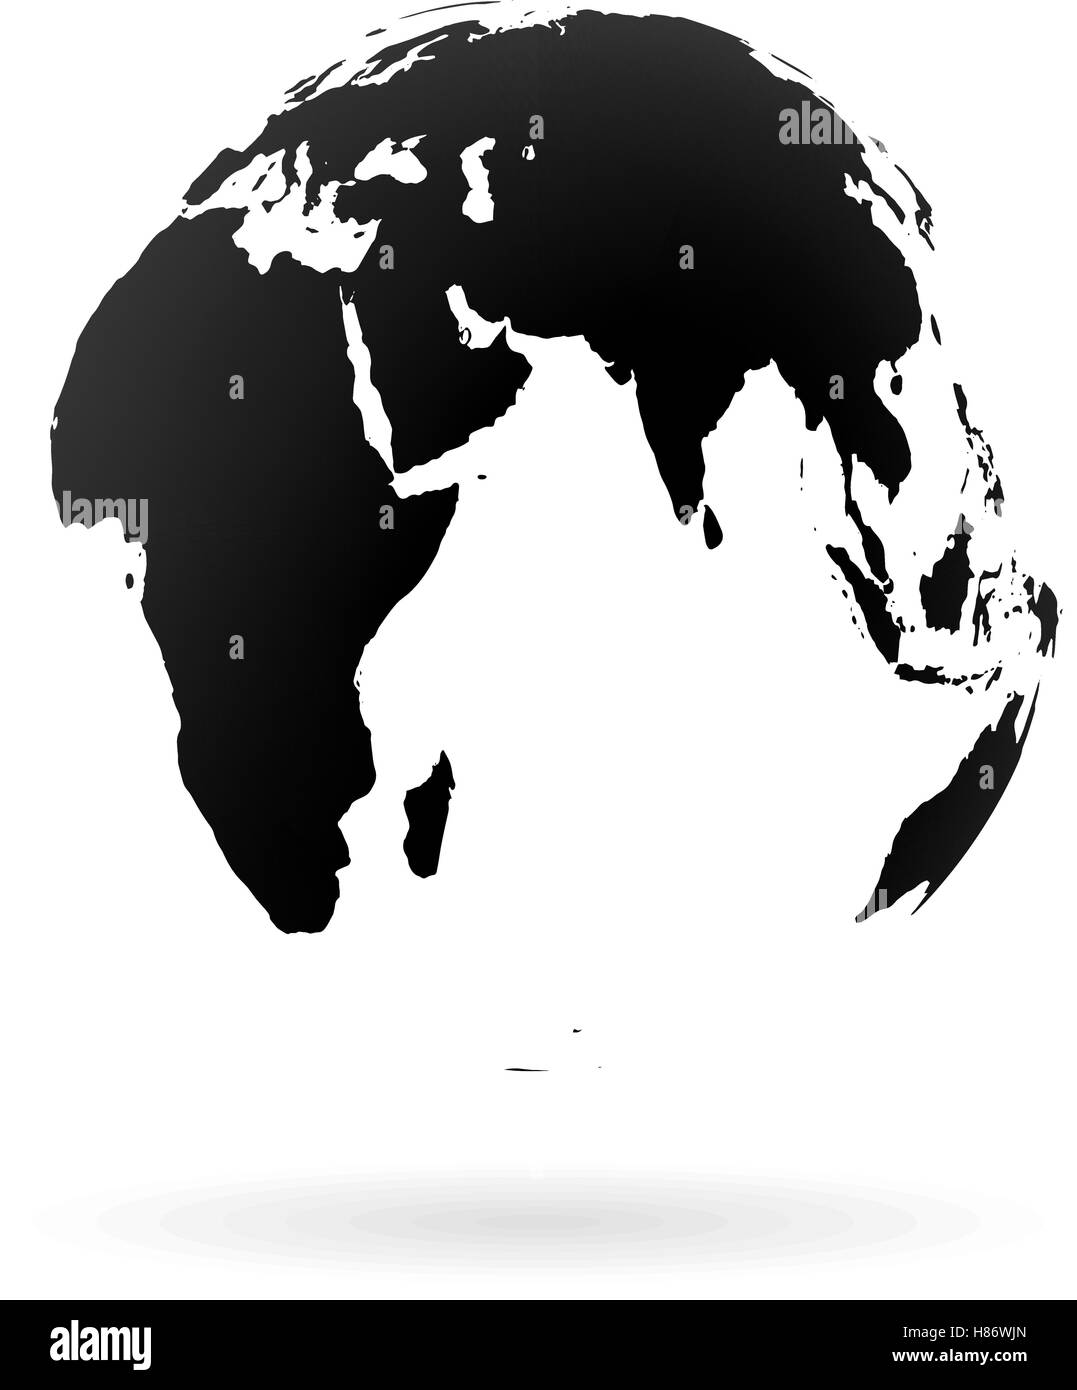 Globe terrestre de la Terre très détaillées, les pays arabes, la Chine, l'Inde. Noir sur fond blanc. Illustration de Vecteur